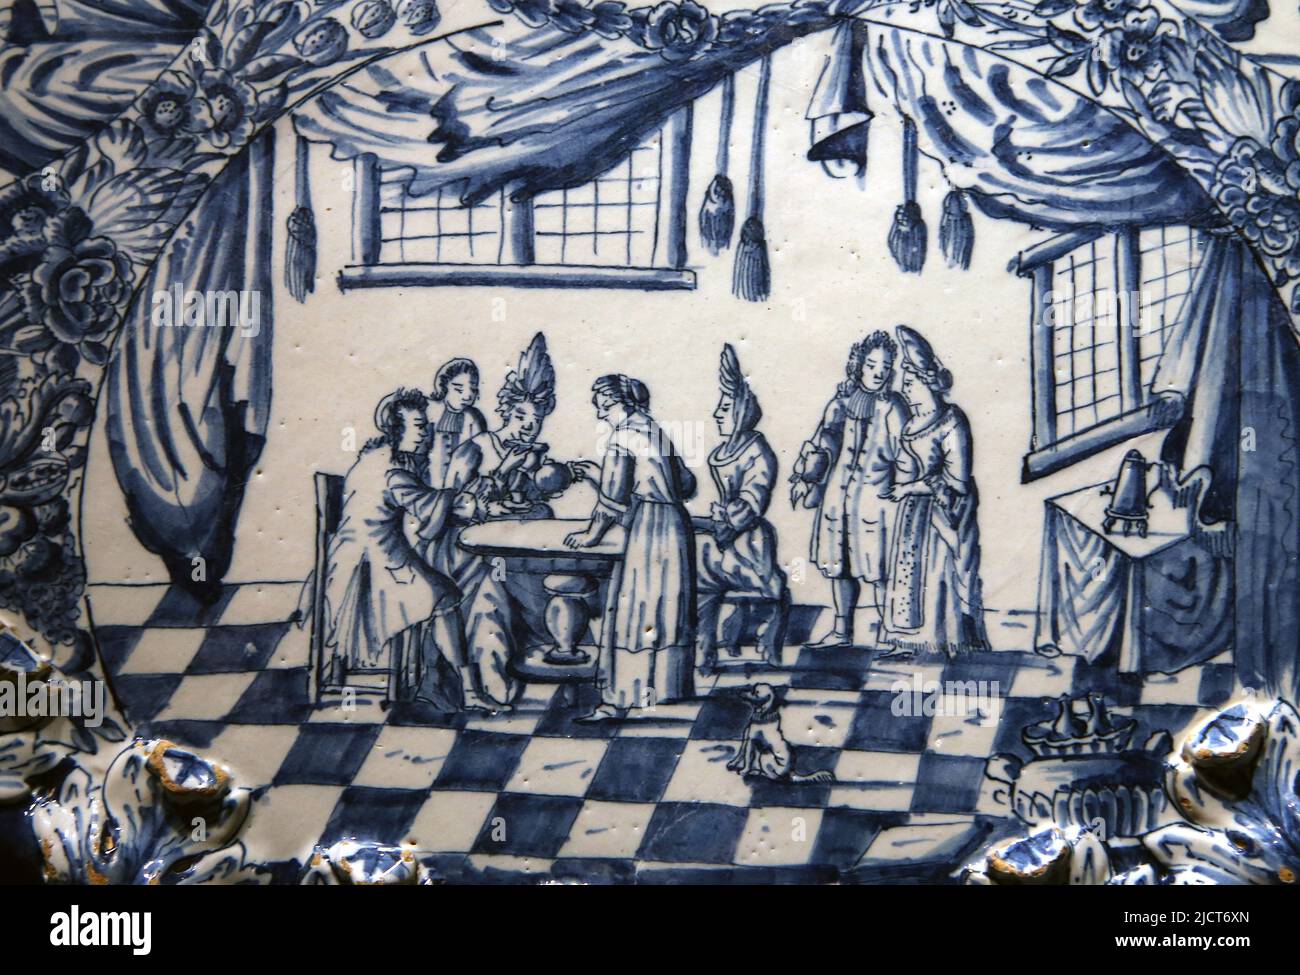 Delftware (glasiertes Steingut) dekoriert mit Szene einer aristokratischen Versammlung. Rijksmuseum. Amsterdam. Niederlande.e Stockfoto